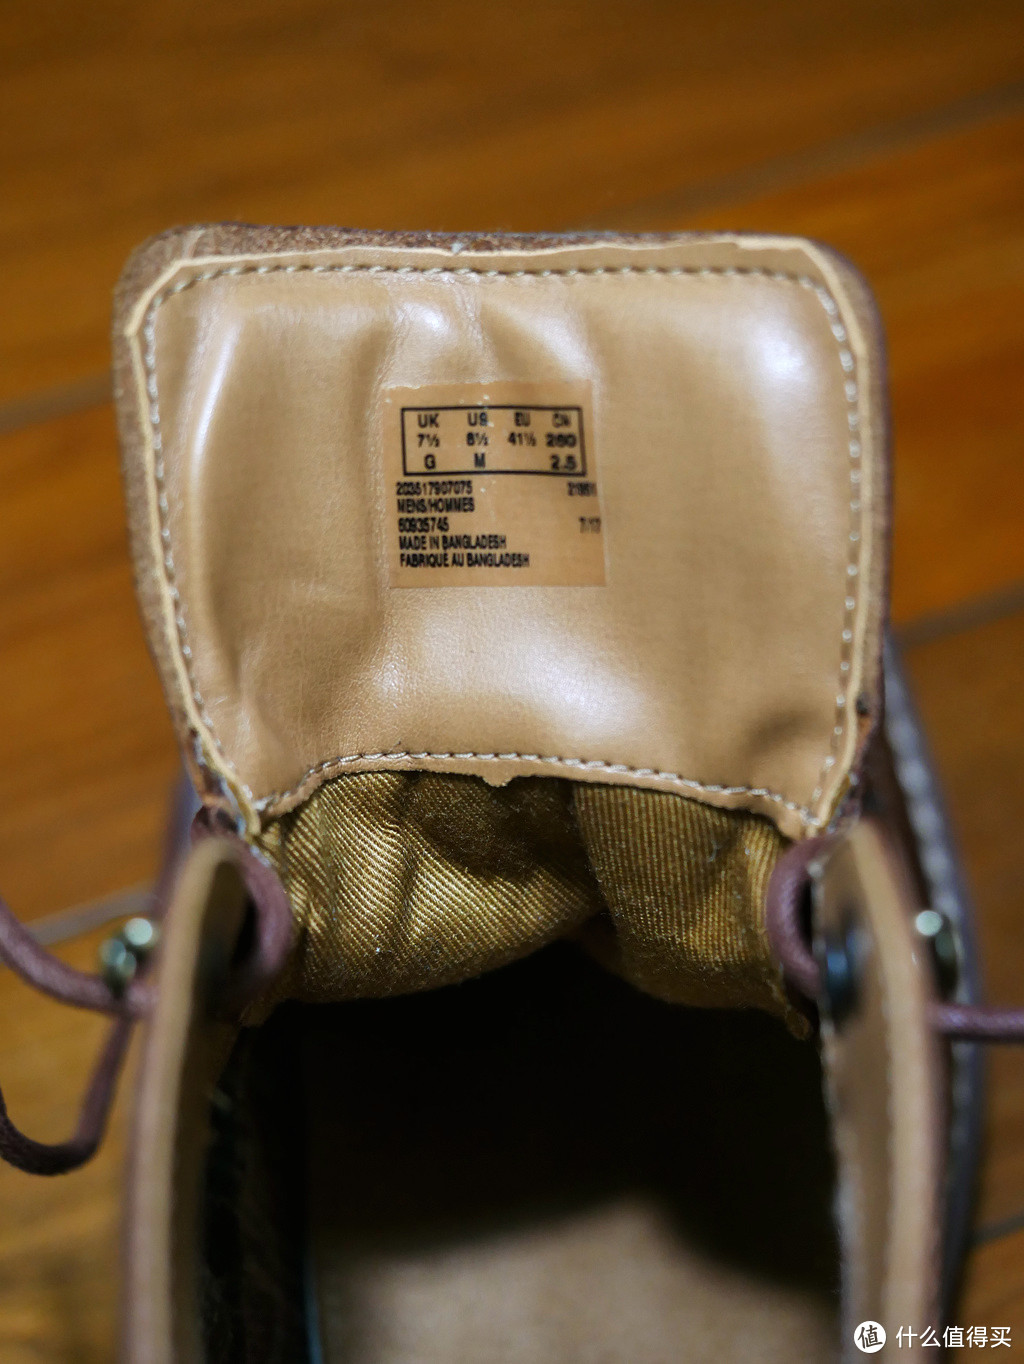 #海淘神差价# 亚马逊海外购 Clarks 布洛克靴